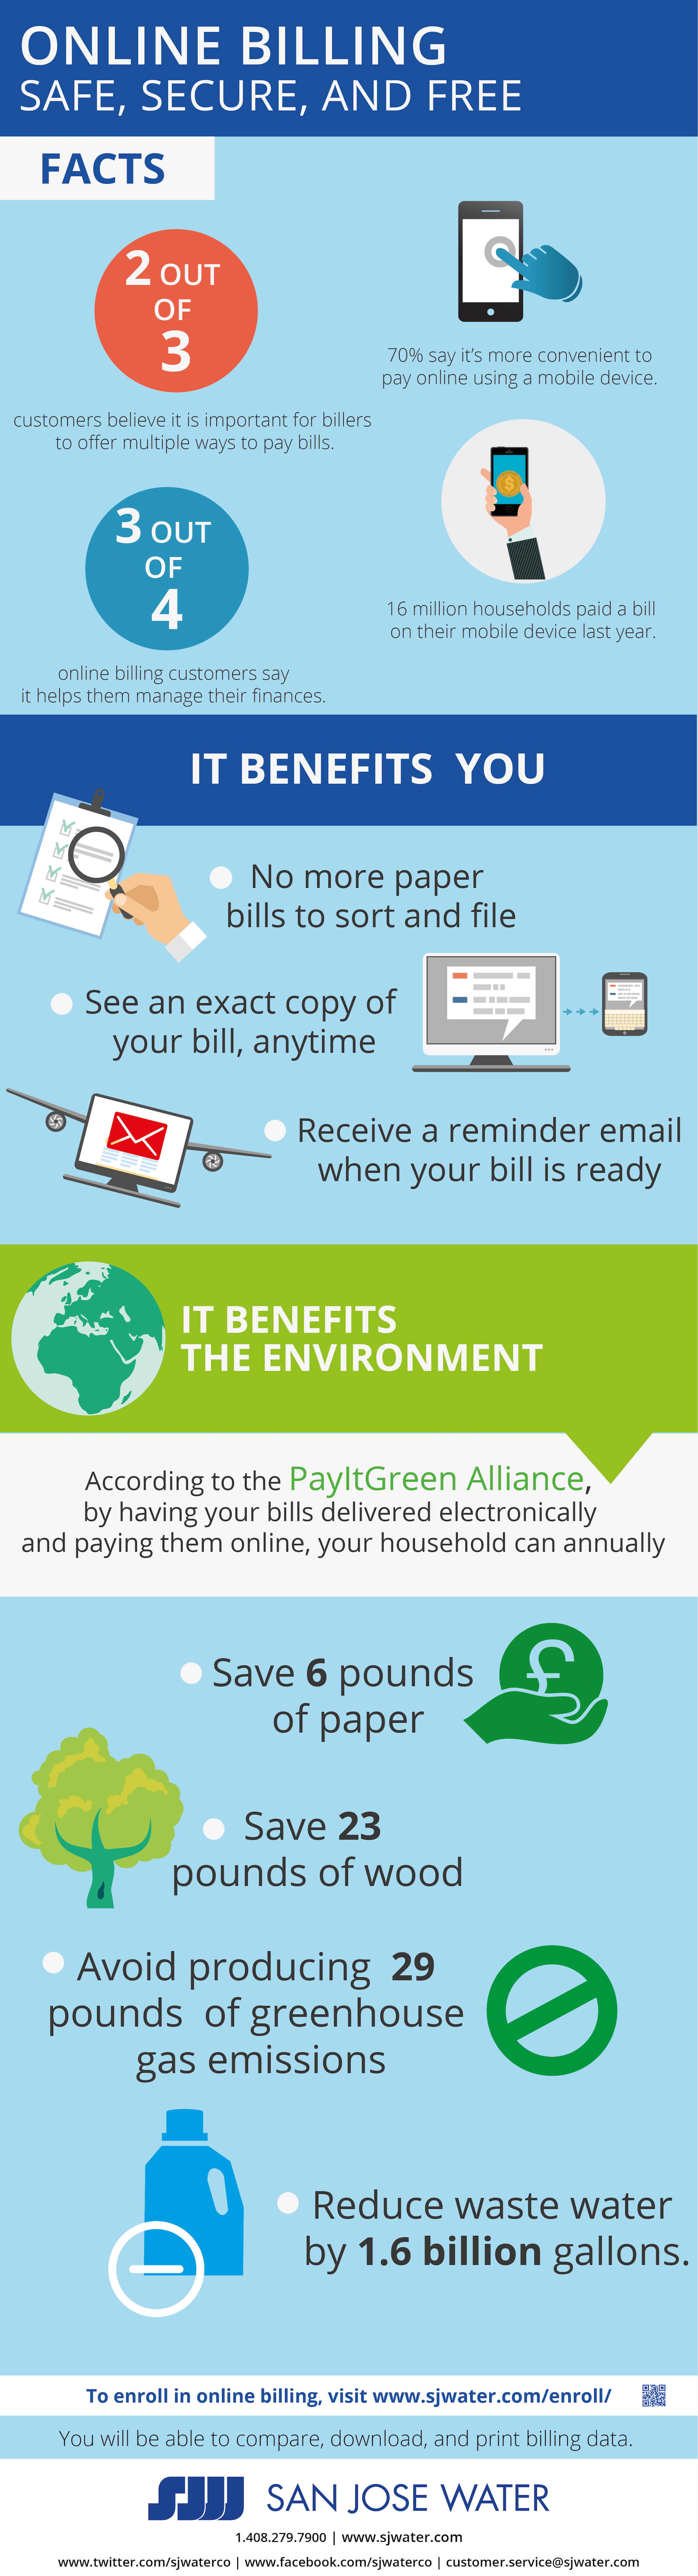 Online Billing Enrollment Infographic